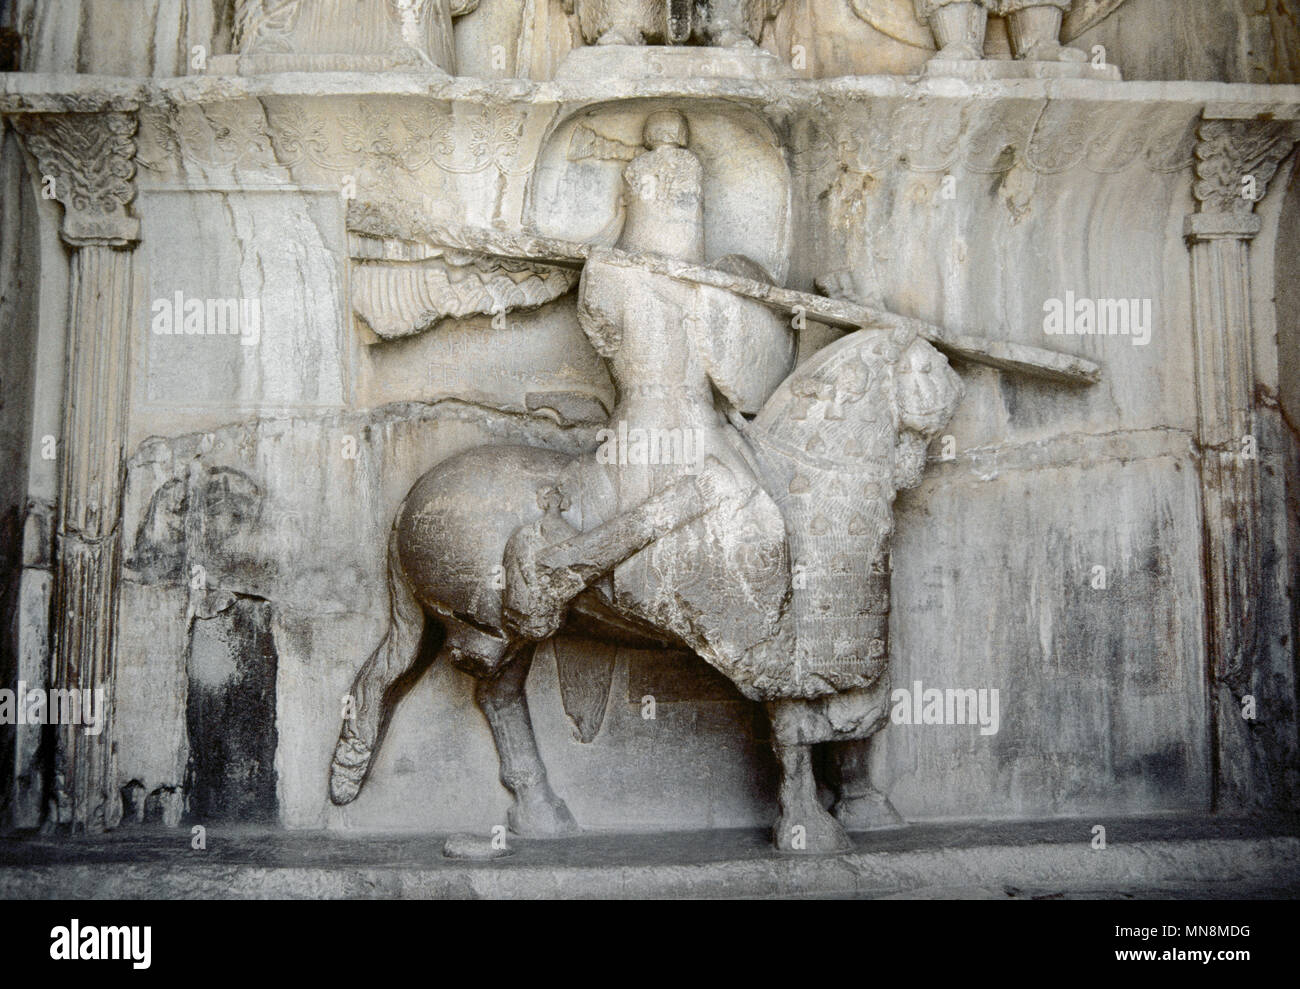 Taq-e Bostan. Grande Arco del giardino. Rilievi di roccia. Persia Sasanide di Persia (Iran). Iv secolo. Dettaglio di una figura di un uomo a cavallo su un cavallo forte. Essi ritengono che la figura mostra Khosrow Parviz oltre il suo cavallo chiamato Shabdiz. Egli è stato l'ultimo grande re dell'Impero sasaniane, re Khosrow II (regnò 590-628). Repubblica islamica di Iran. Foto Stock